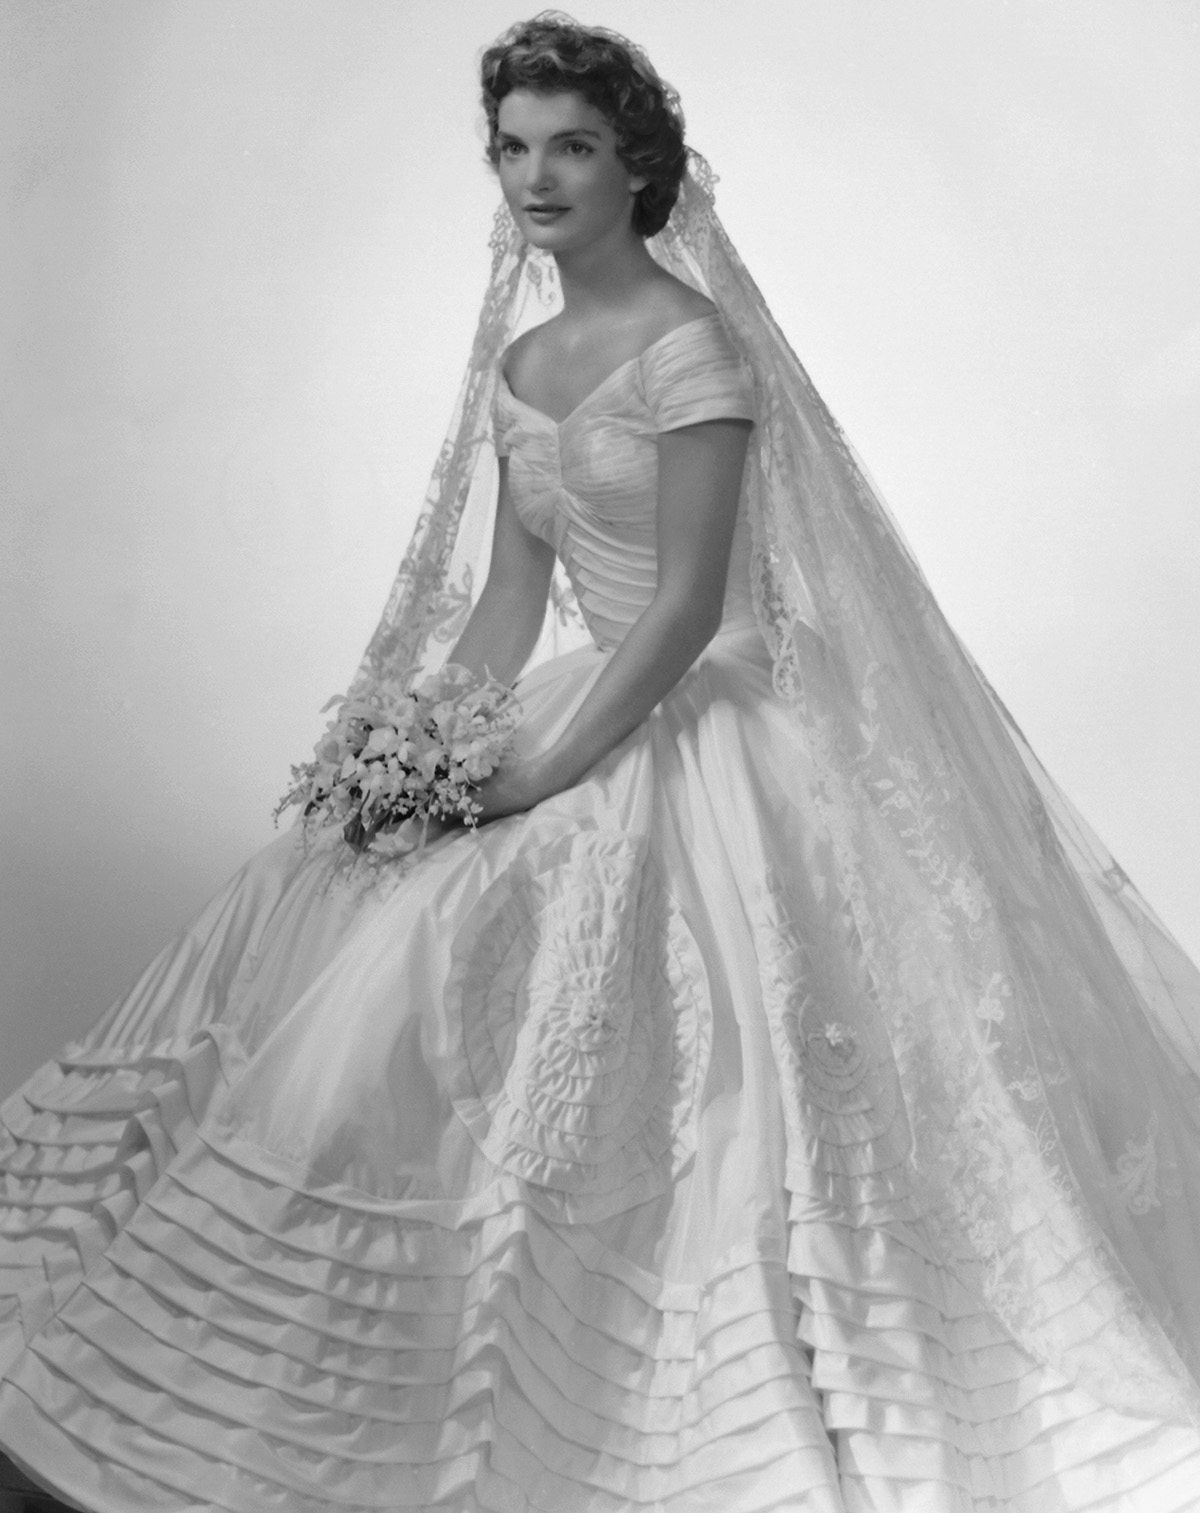 Trong hôn lễ cùng Tổng thống John F. Kennedy năm 1953, thiết kế đầm lụa màu ngà với phần eo ôm gọn thân hình mảnh mai và những tầng hoa văn in nổi mang đến vẻ thanh lịch cho nàng dâu mới. (Ảnh: Racked)